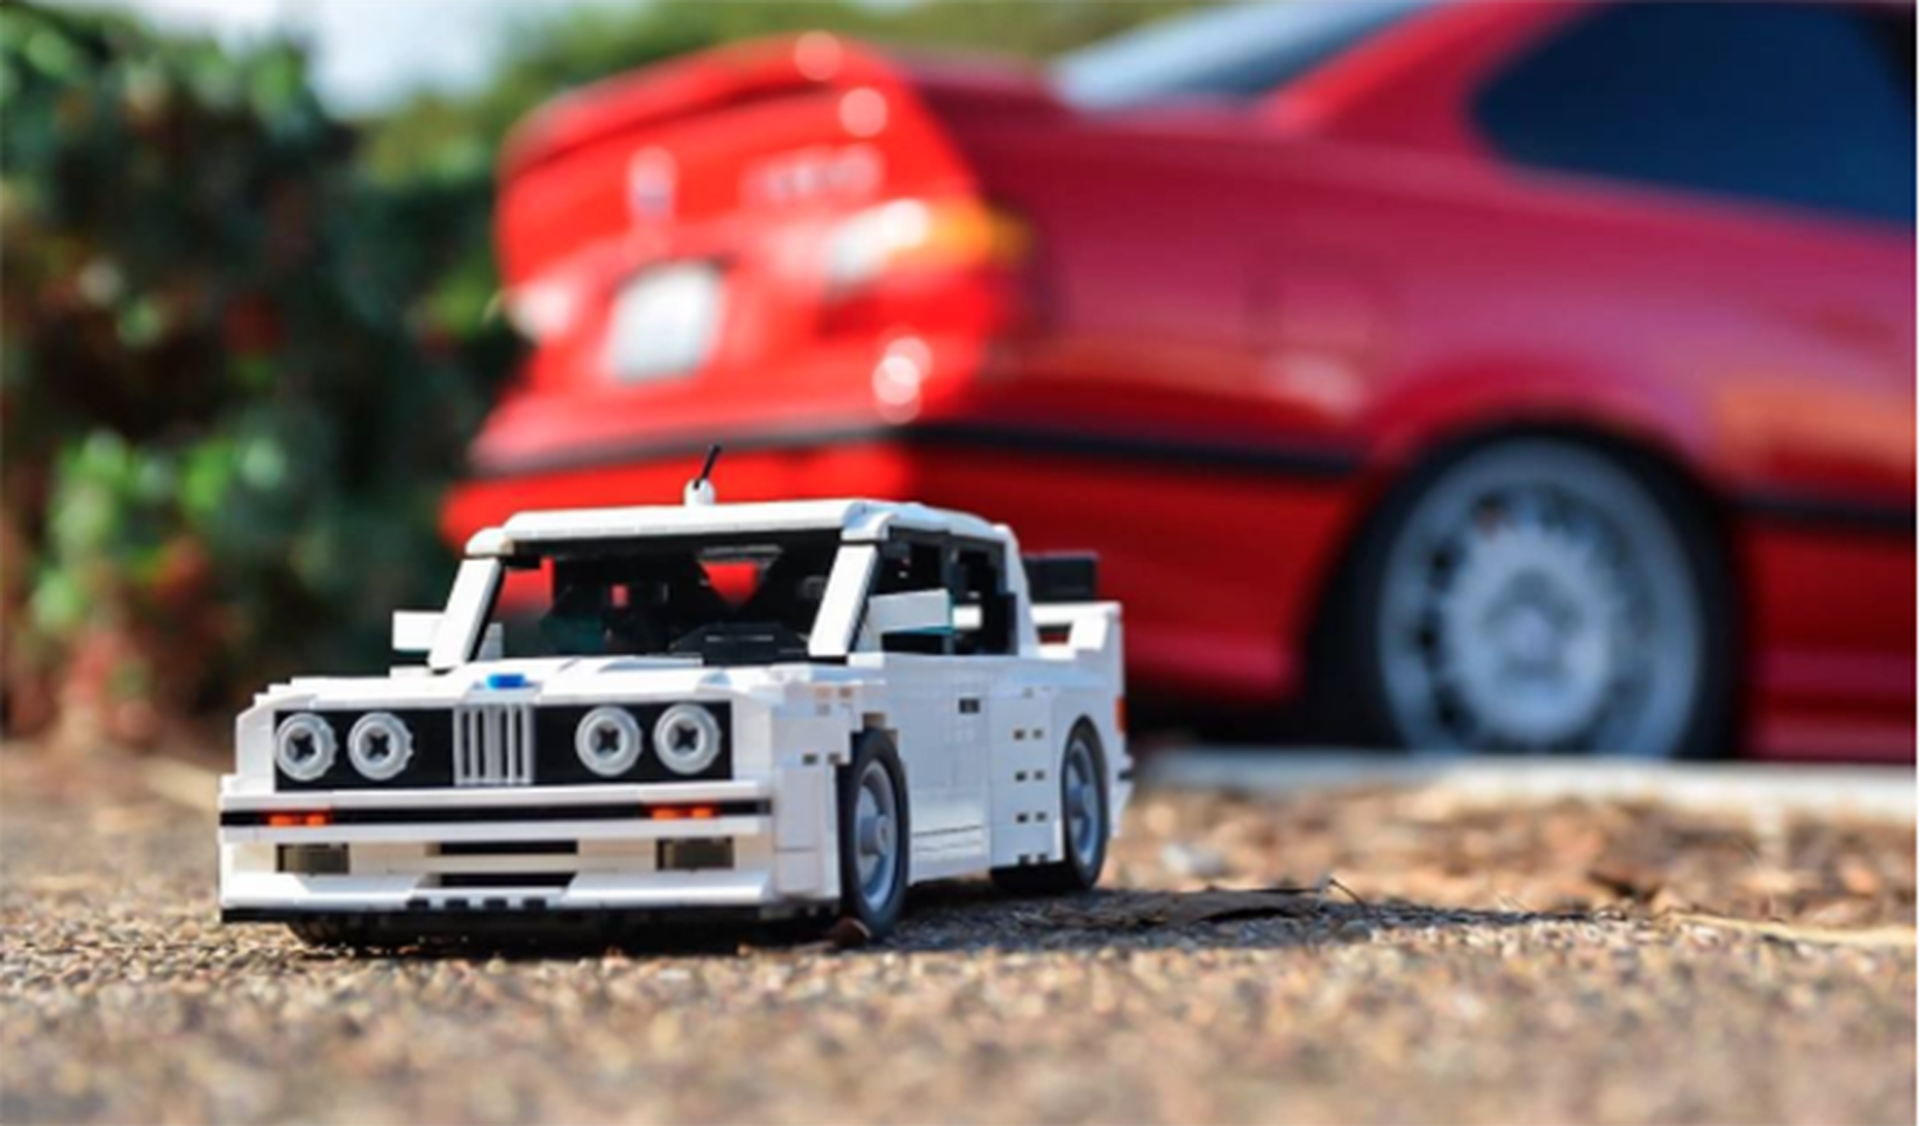 Lego BMW M3 E30